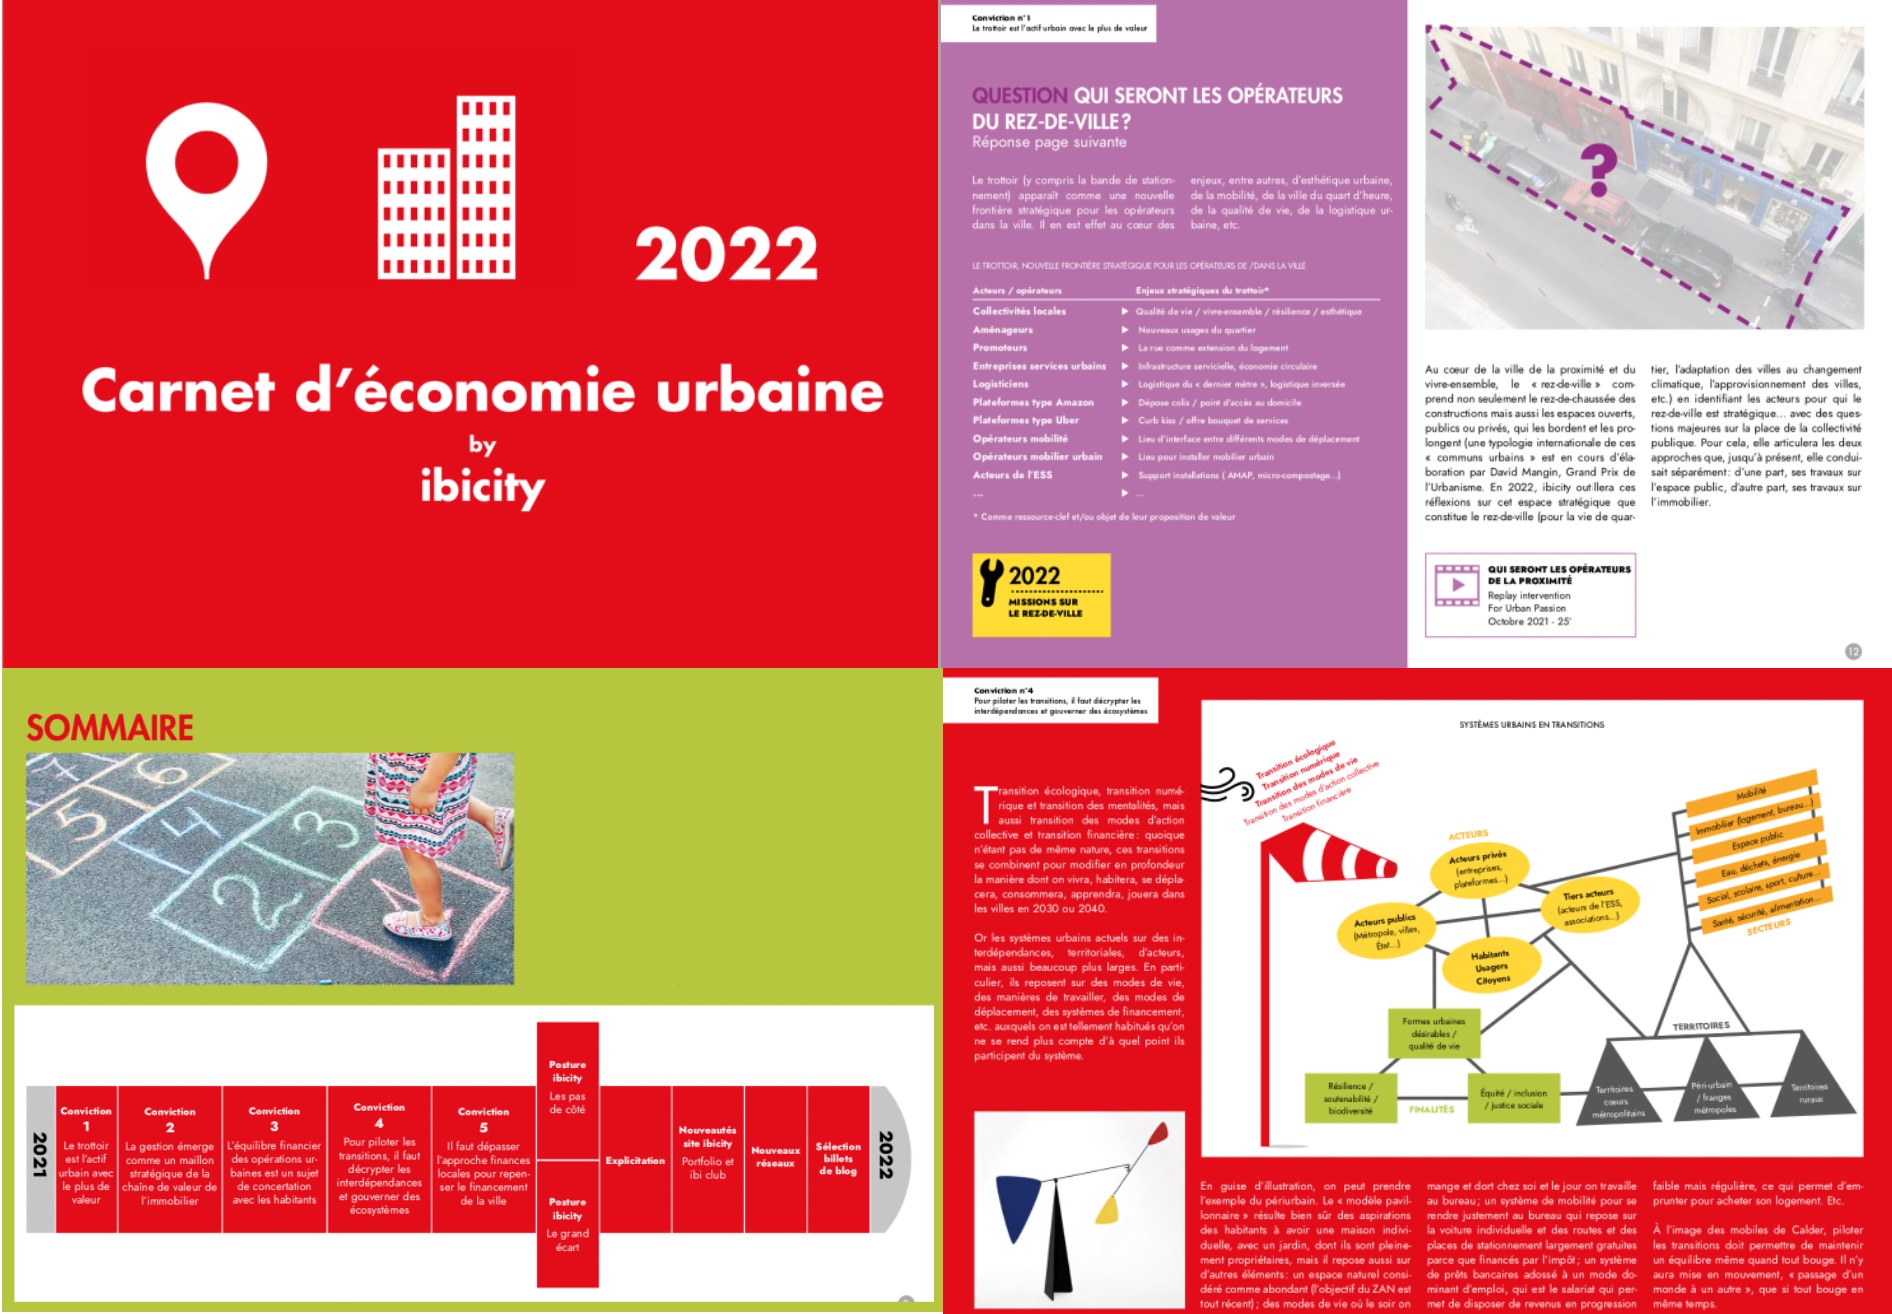 Carnet d'économie urbaine 2022 - ibicity